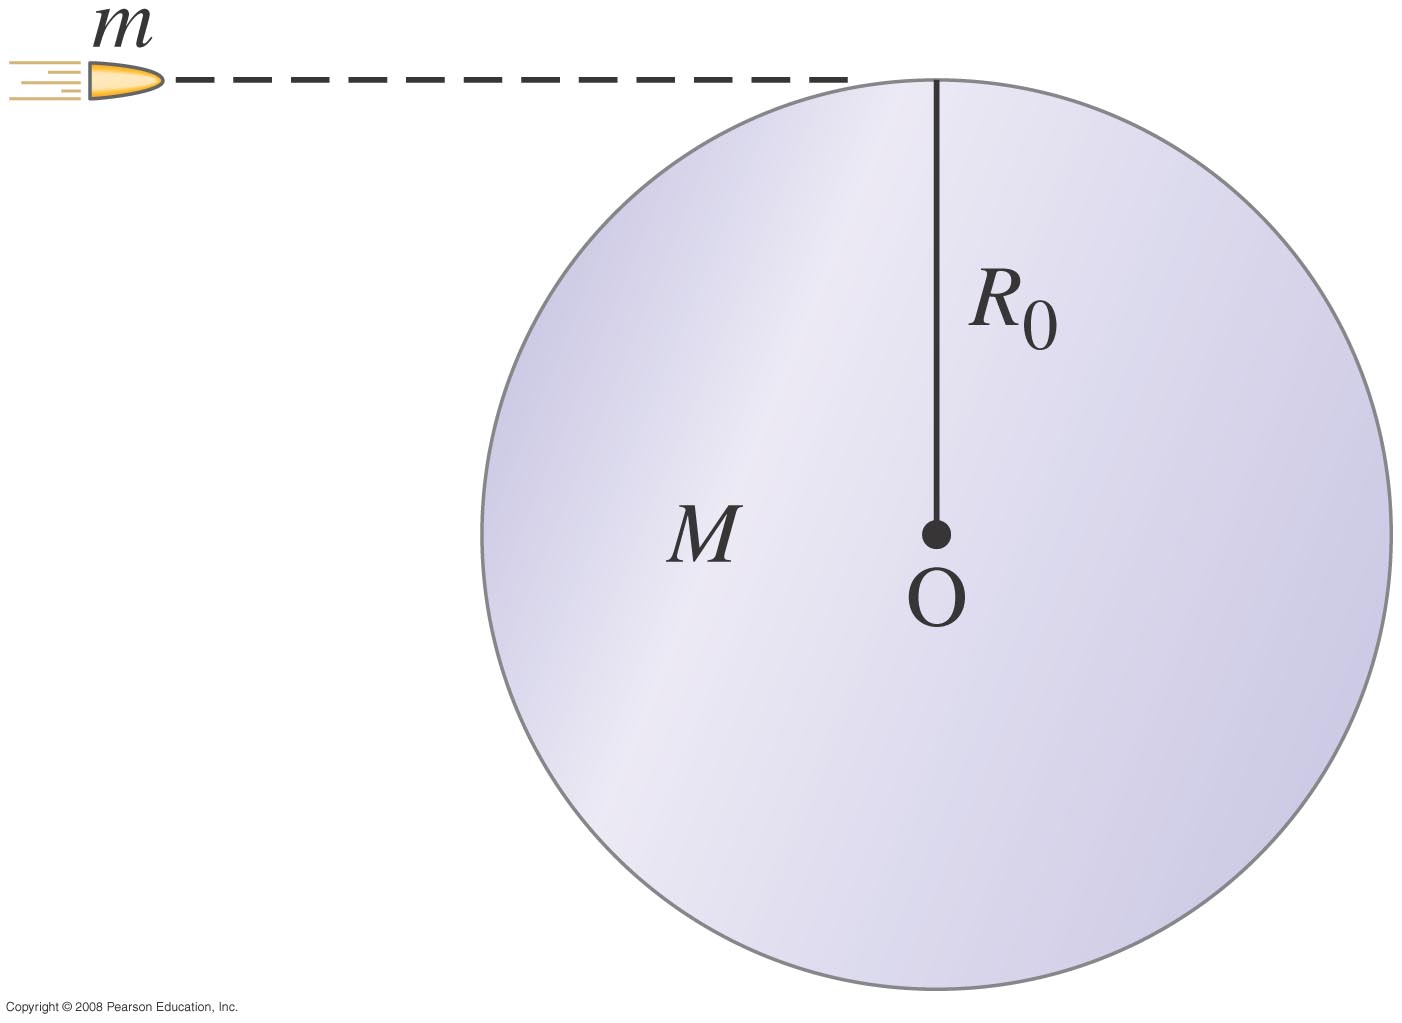 Μια σφαίρα (άτοµο) µάζας m κινείται µε ταχύτητα v και ενσωµατώνεται στην περιφέρεια ενός κυλίνδρου (µορίου) µάζας M και ακτίνας R 0.